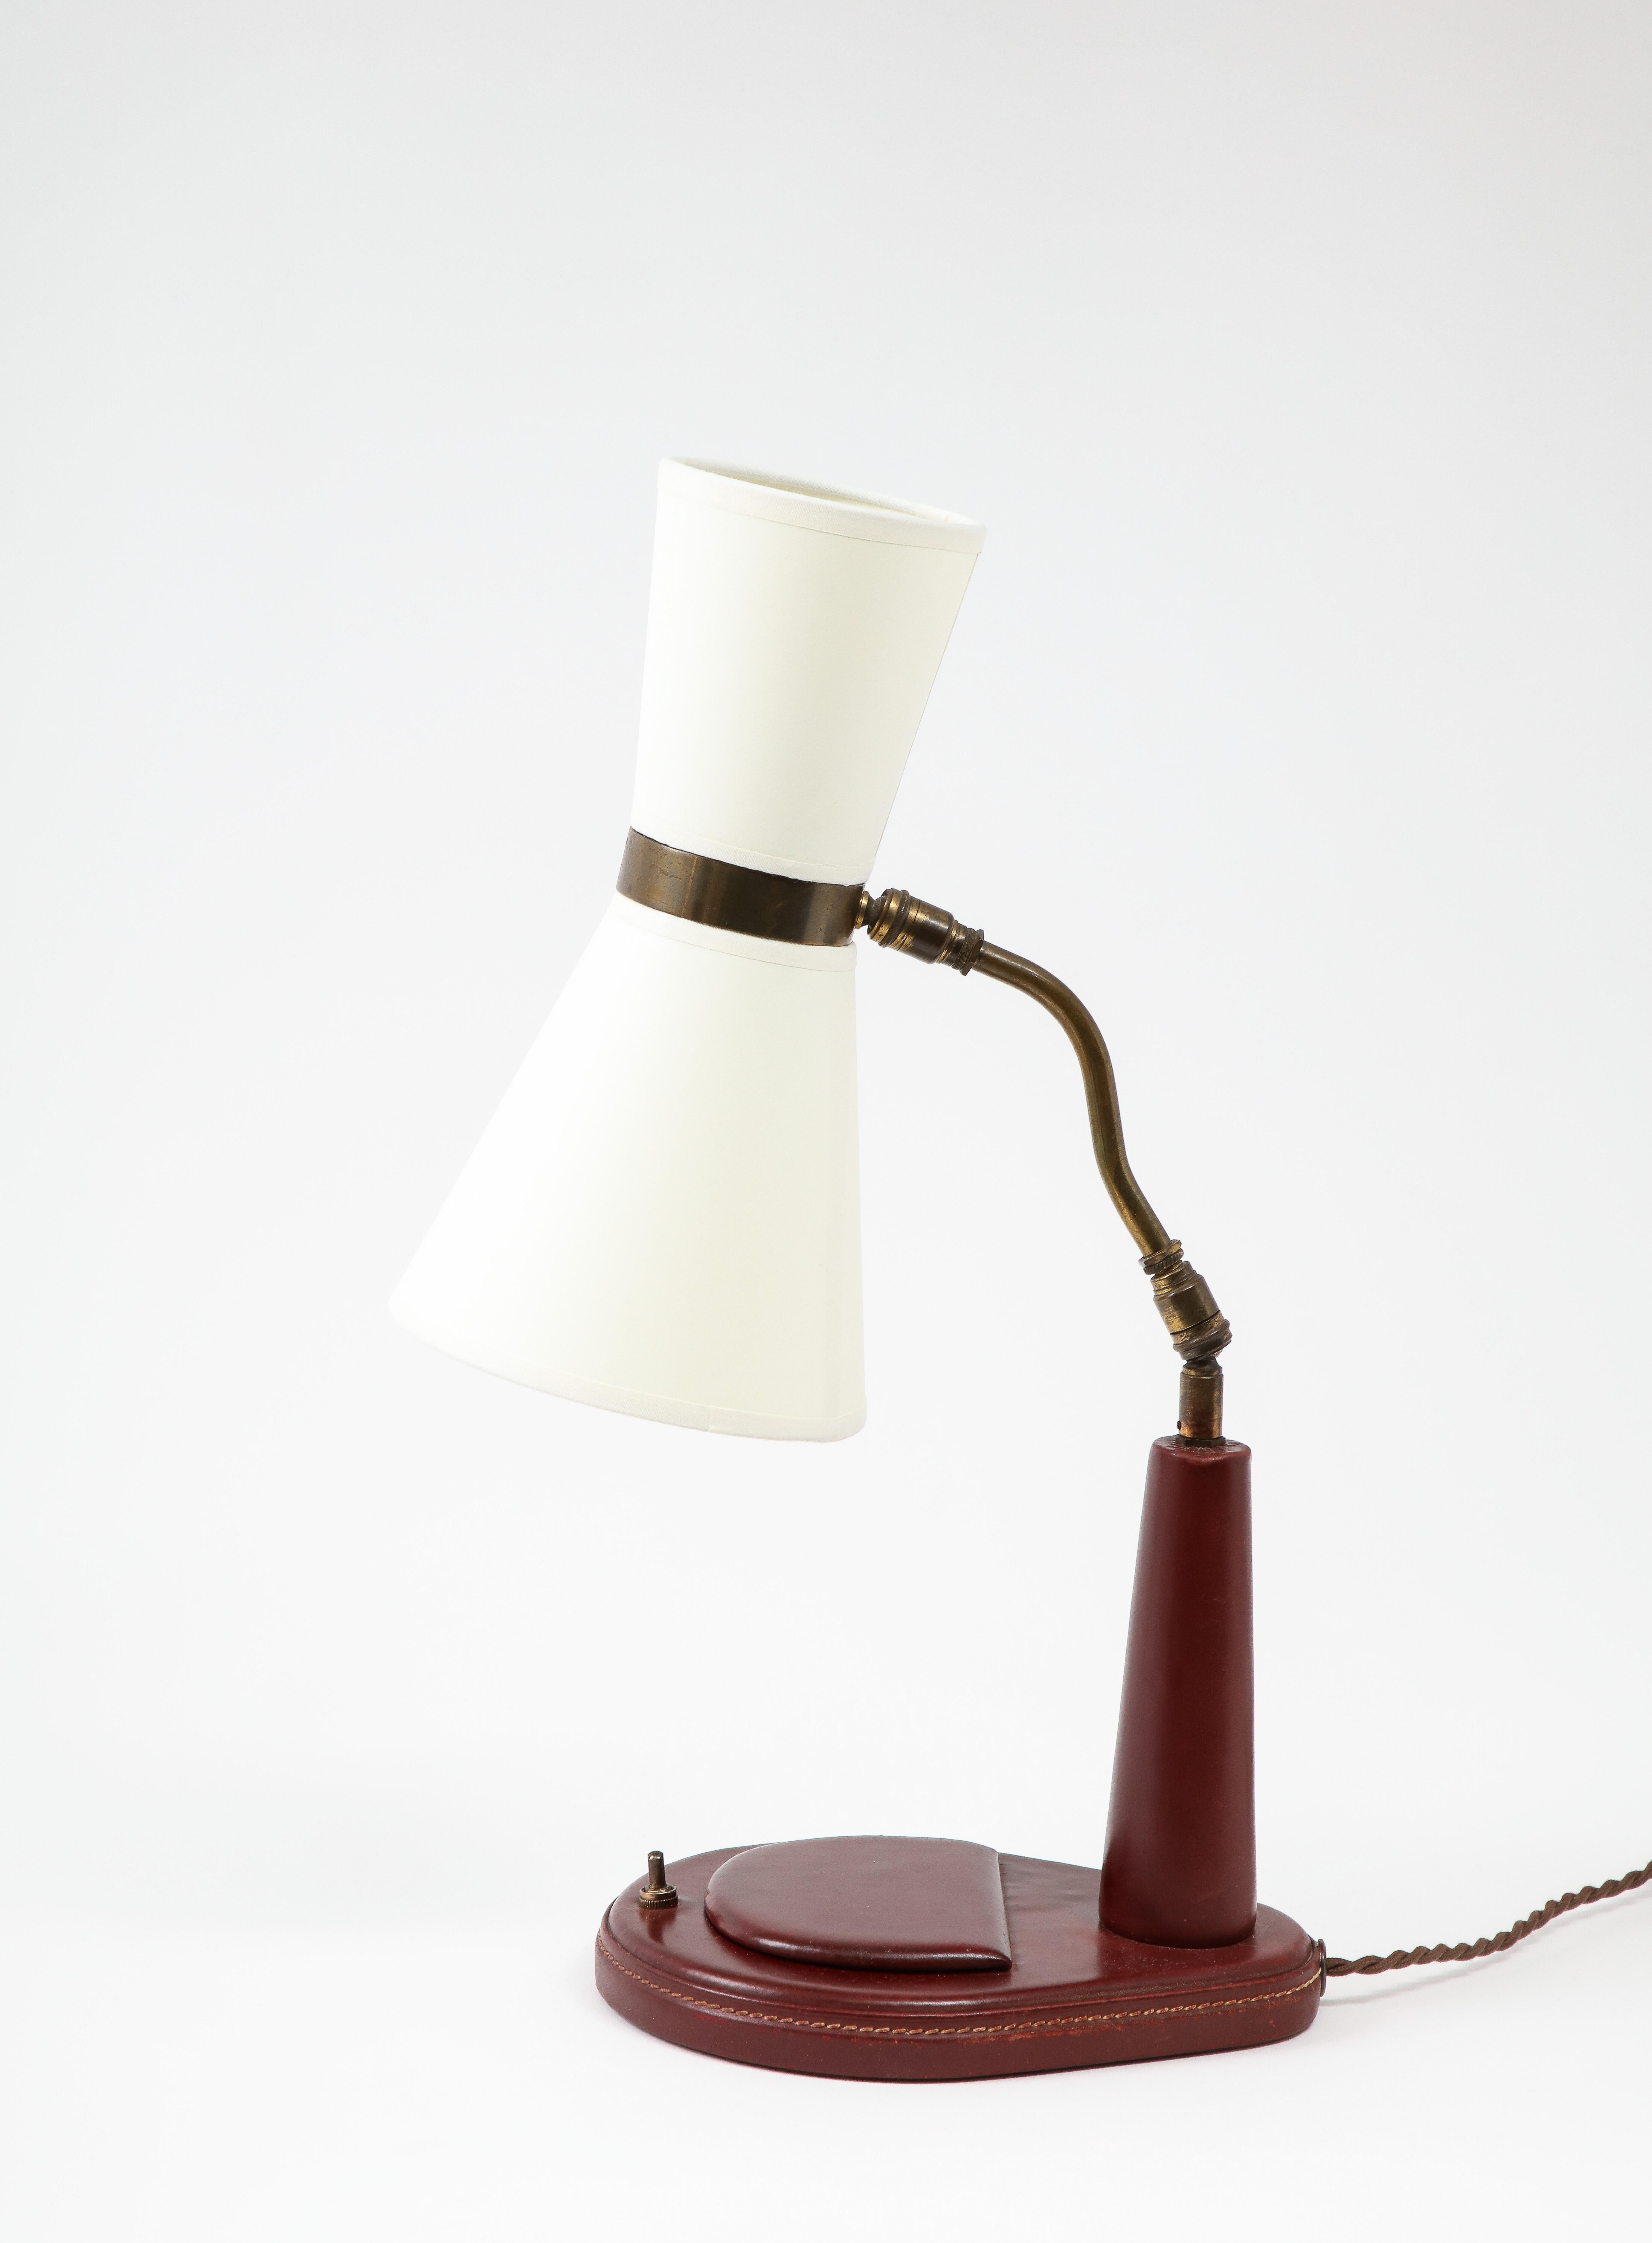 Lancel Burgundy Leather Desk Lamp after Adnet, France 1960's For Sale 4